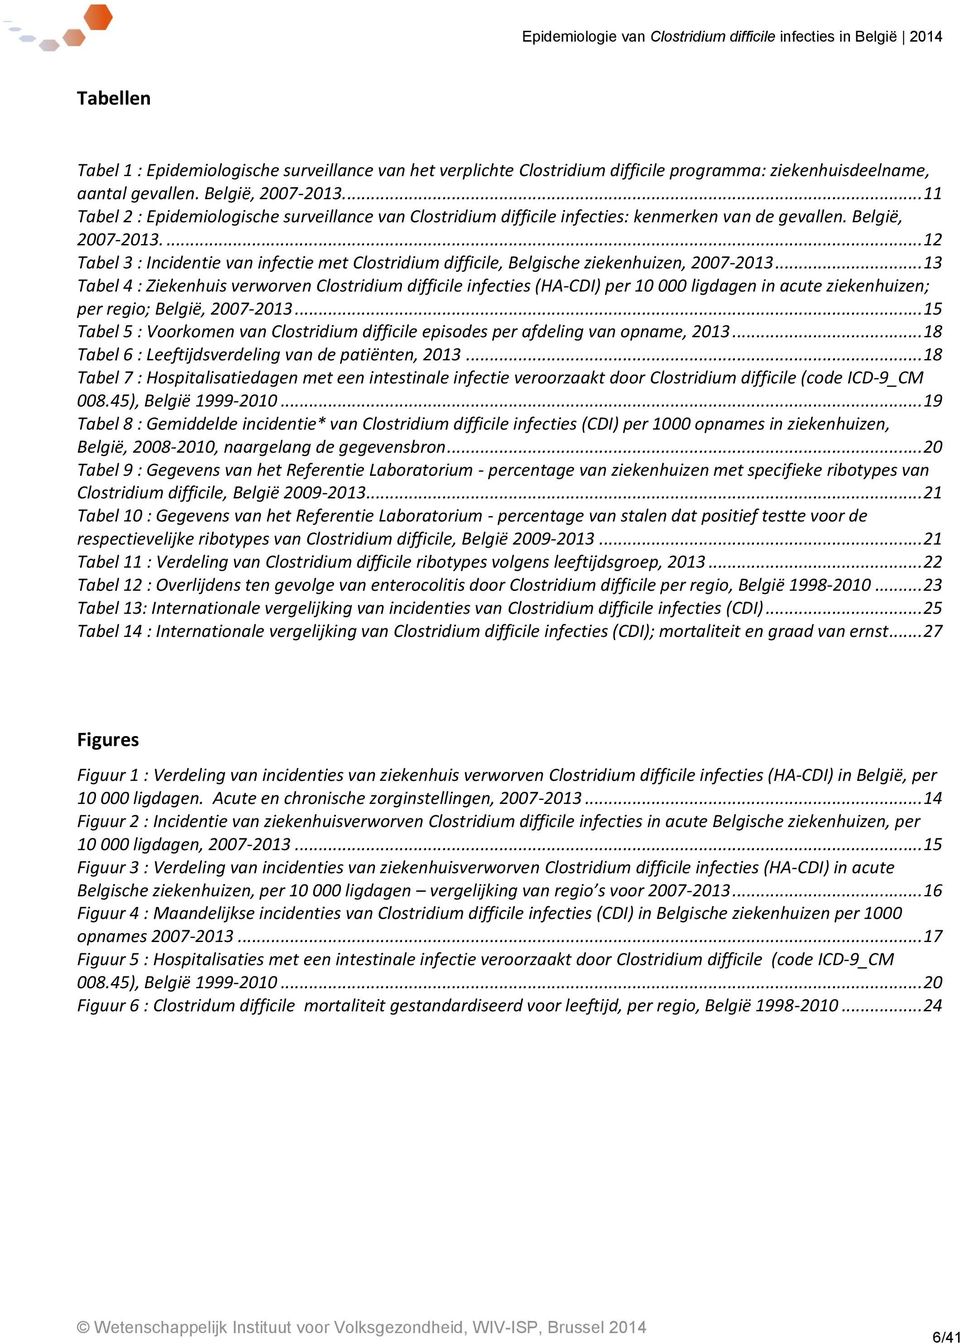 ... 12 Tabel 3 : Incidentie van infectie met Clostridium difficile, Belgische ziekenhuizen, 2007-2013.